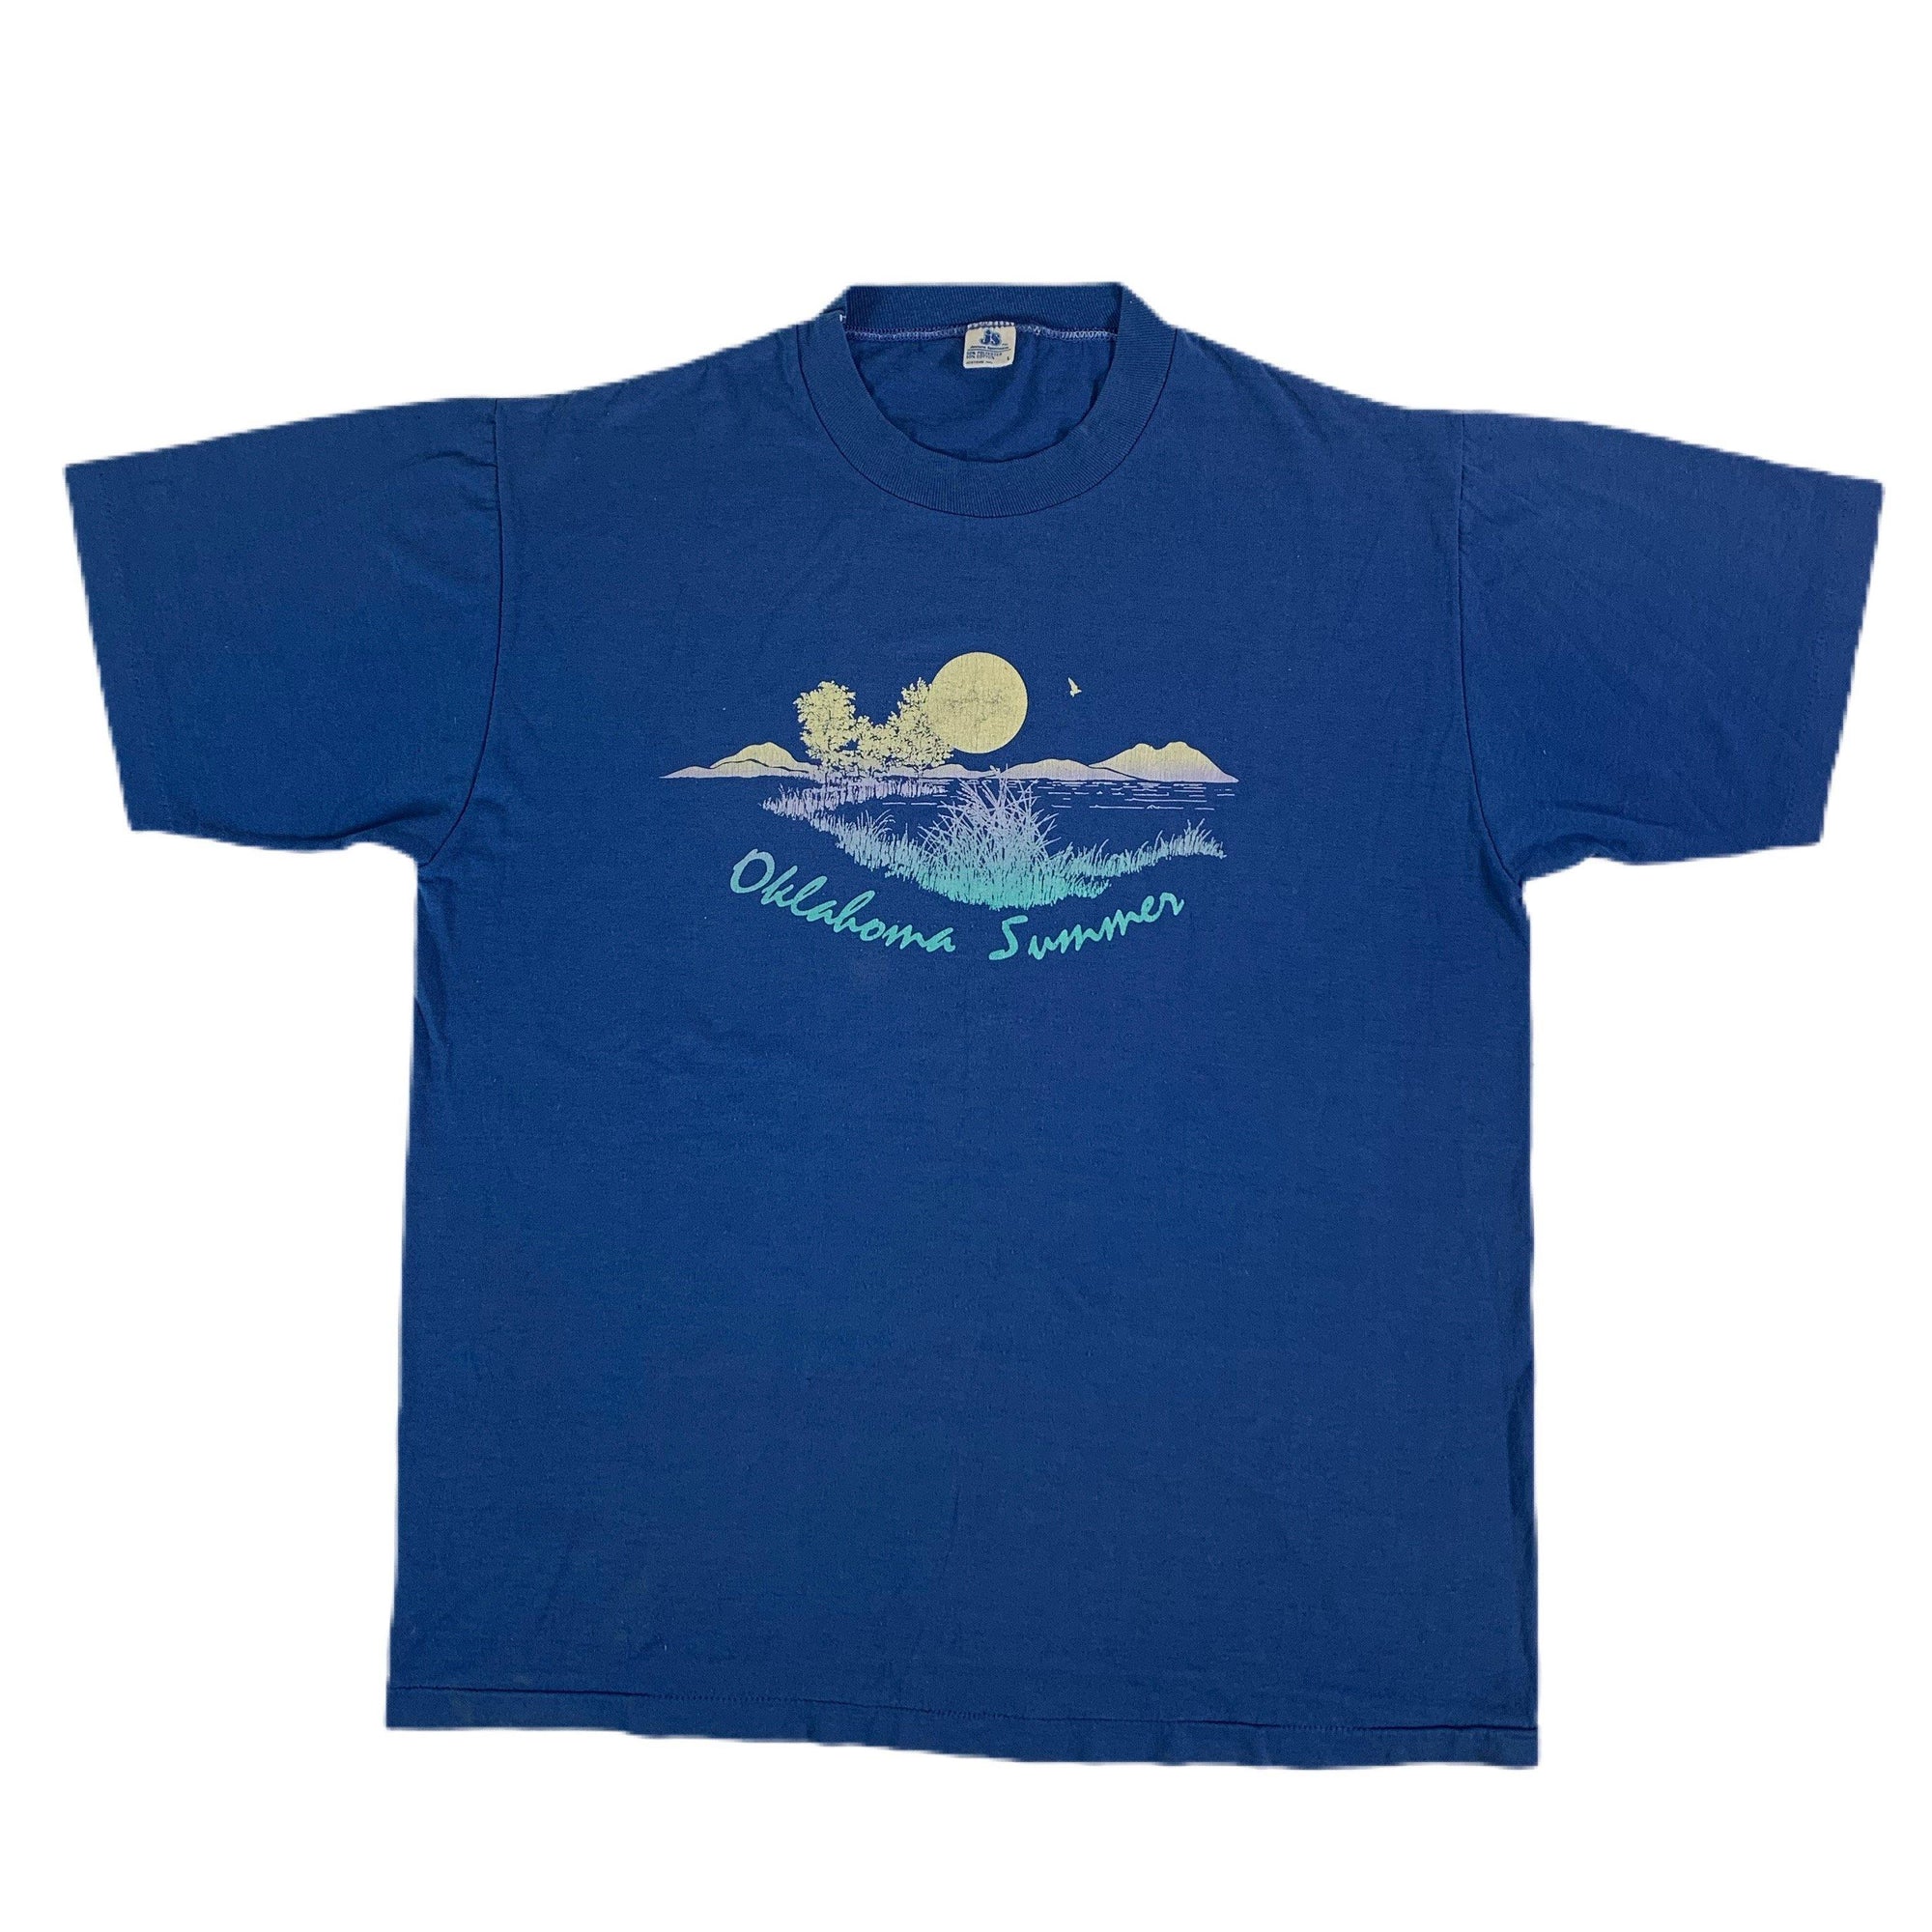 Vintage Oklahoma "Summer" T-Shirt - jointcustodydc